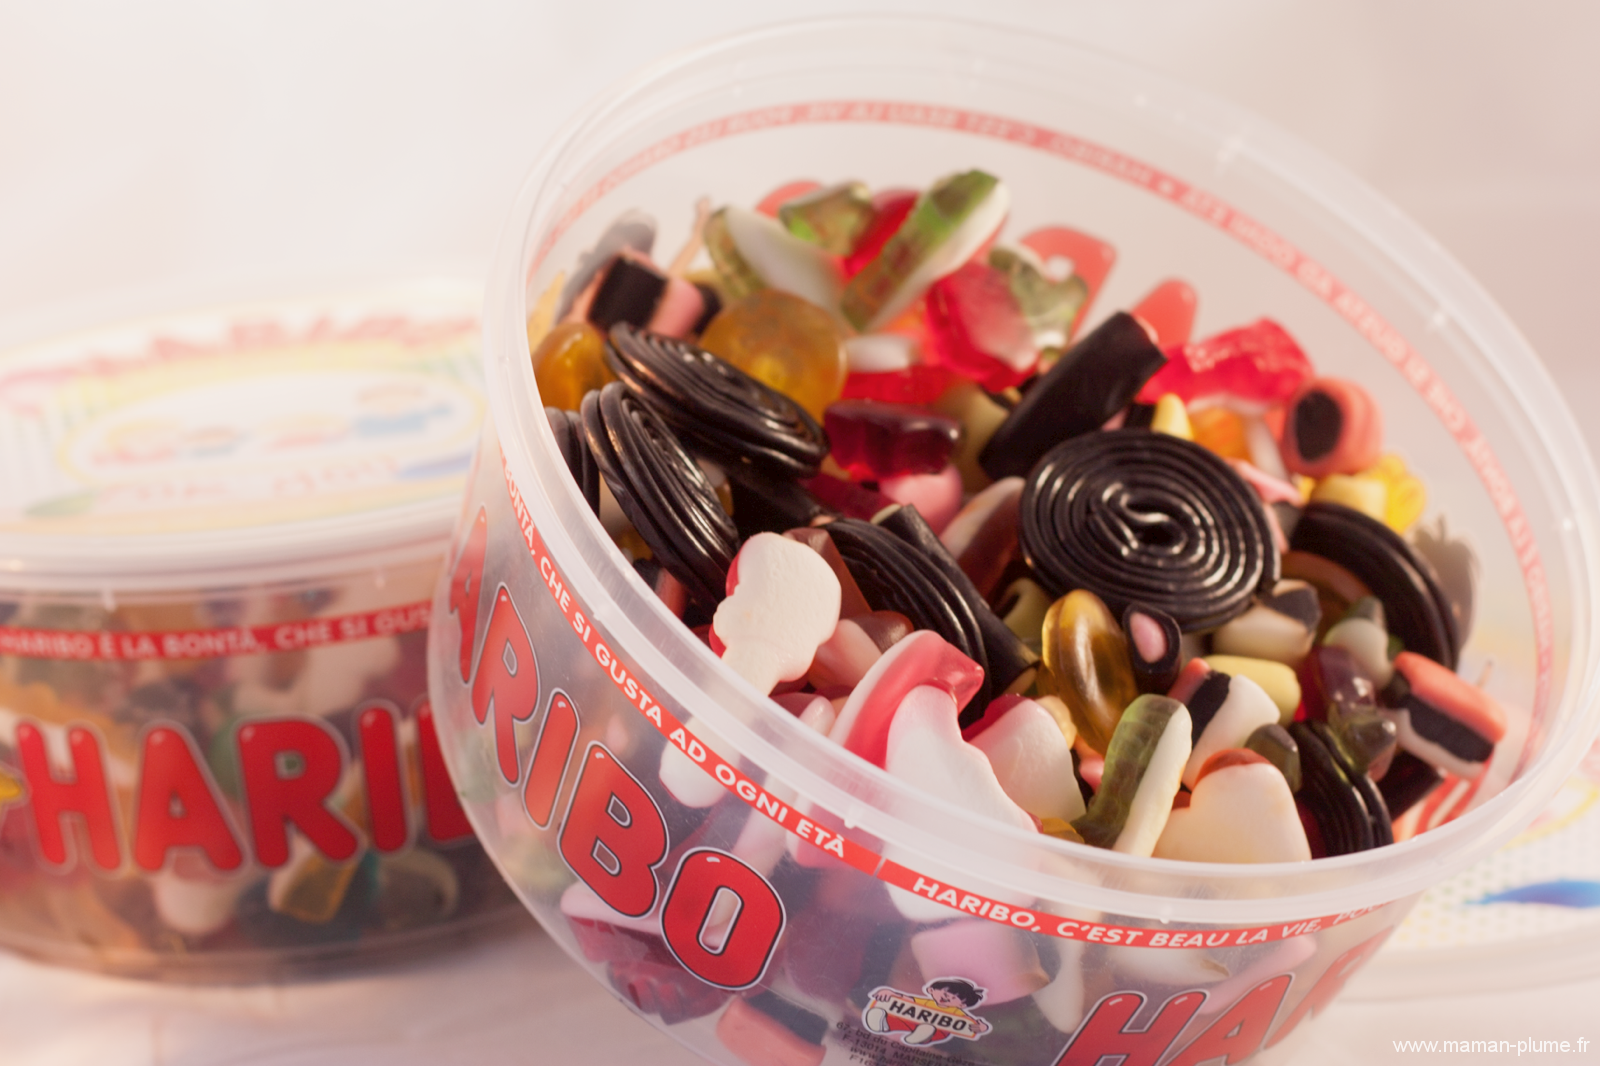 Boites de bonbons Haribo 600g personnalisée à personnaliser